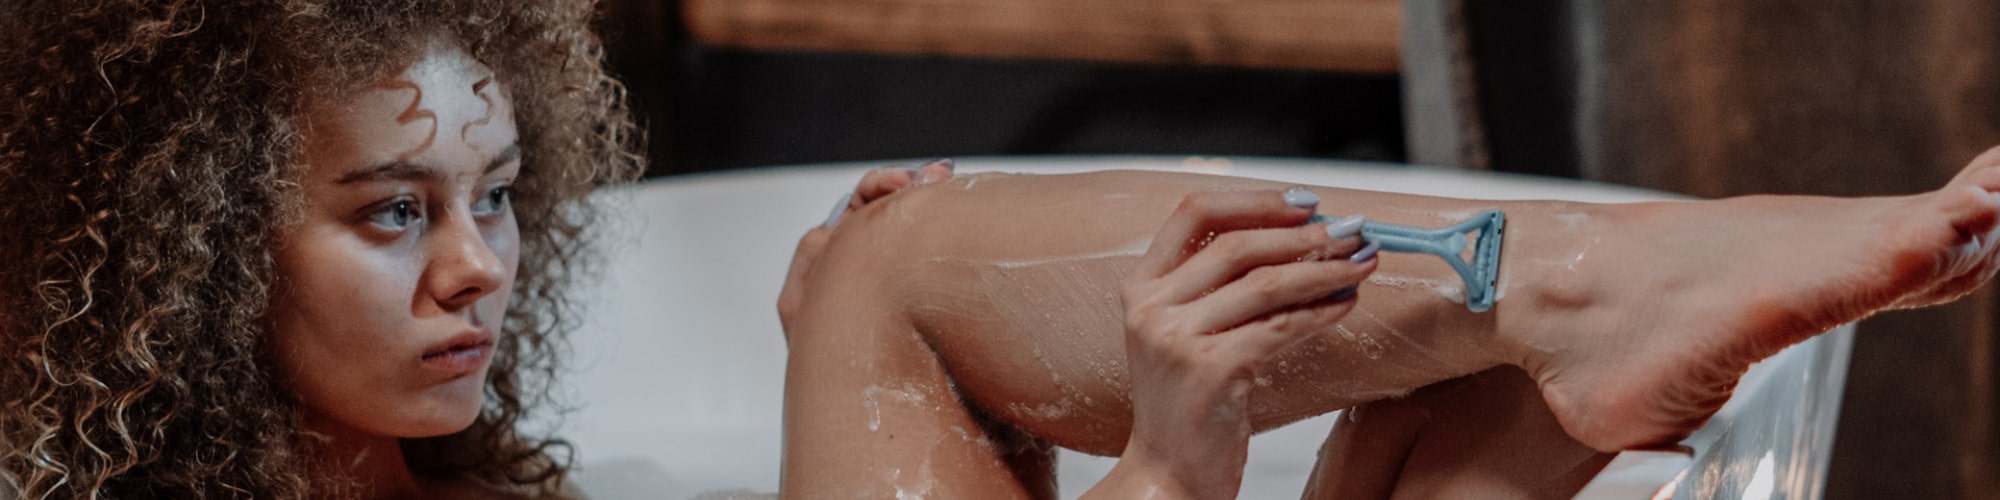 Kvinde barberer sine ben med skraber i et badekar